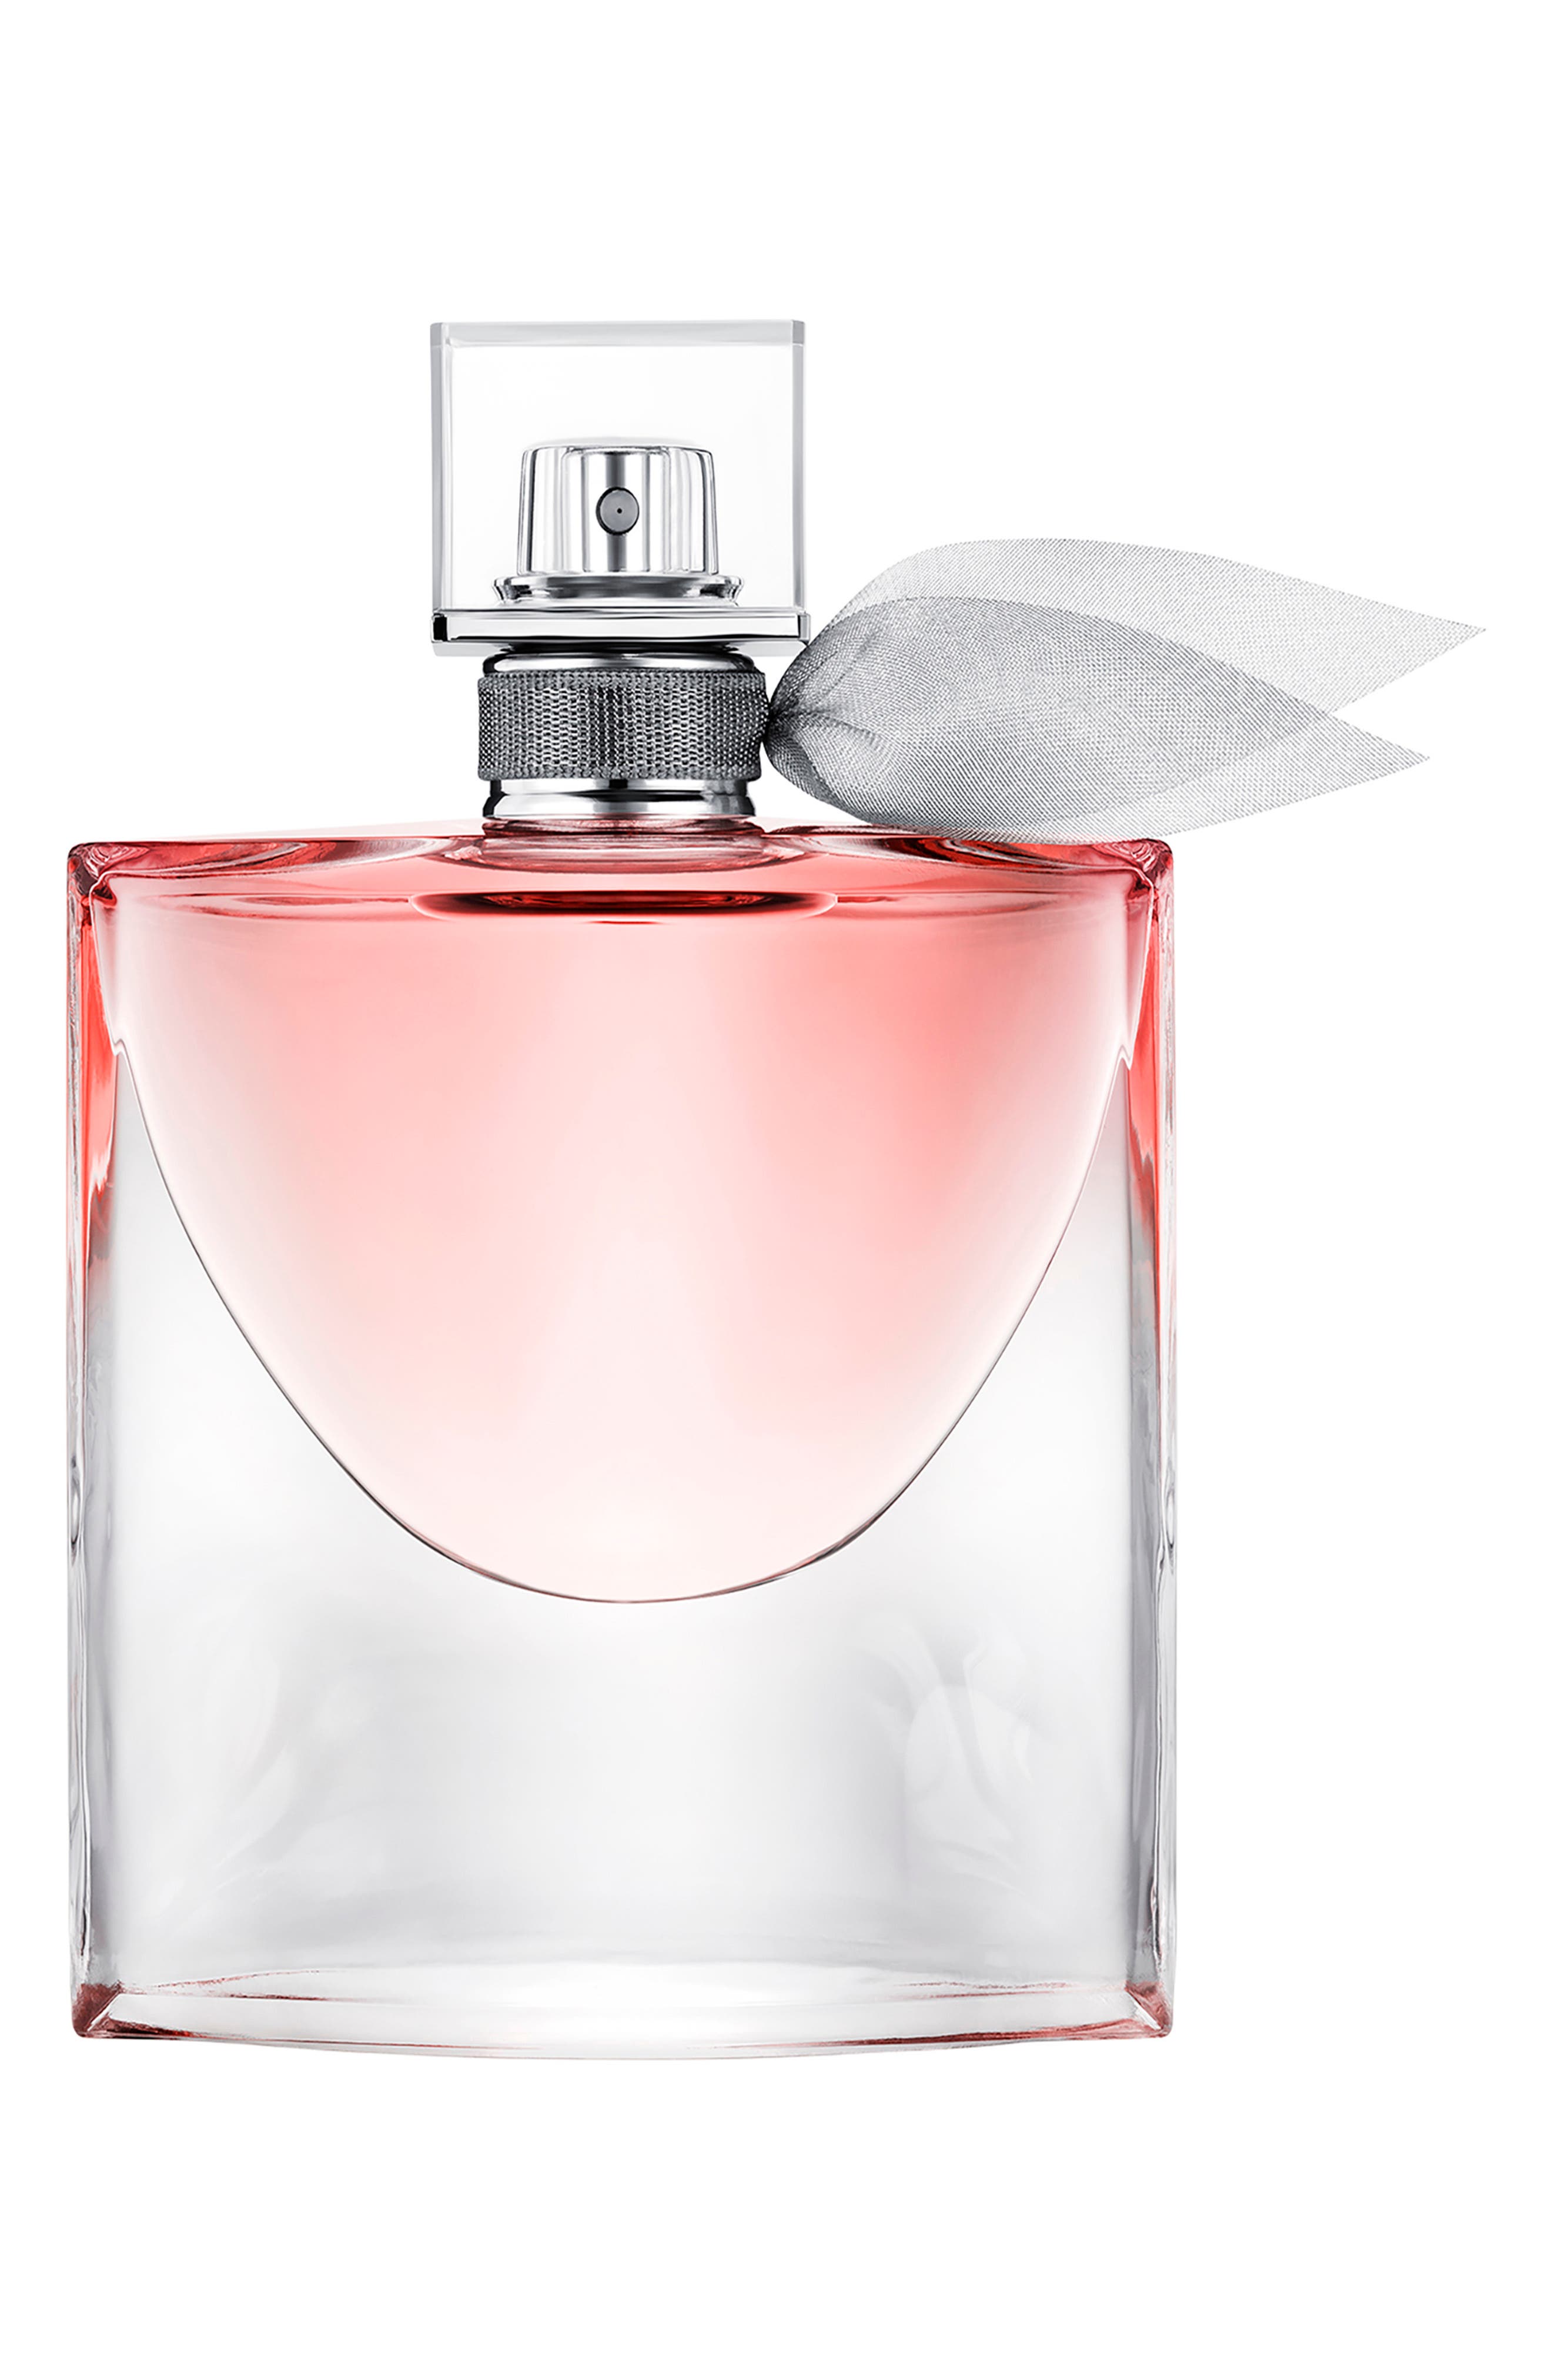 perfumes similar to lancome la vie est belle